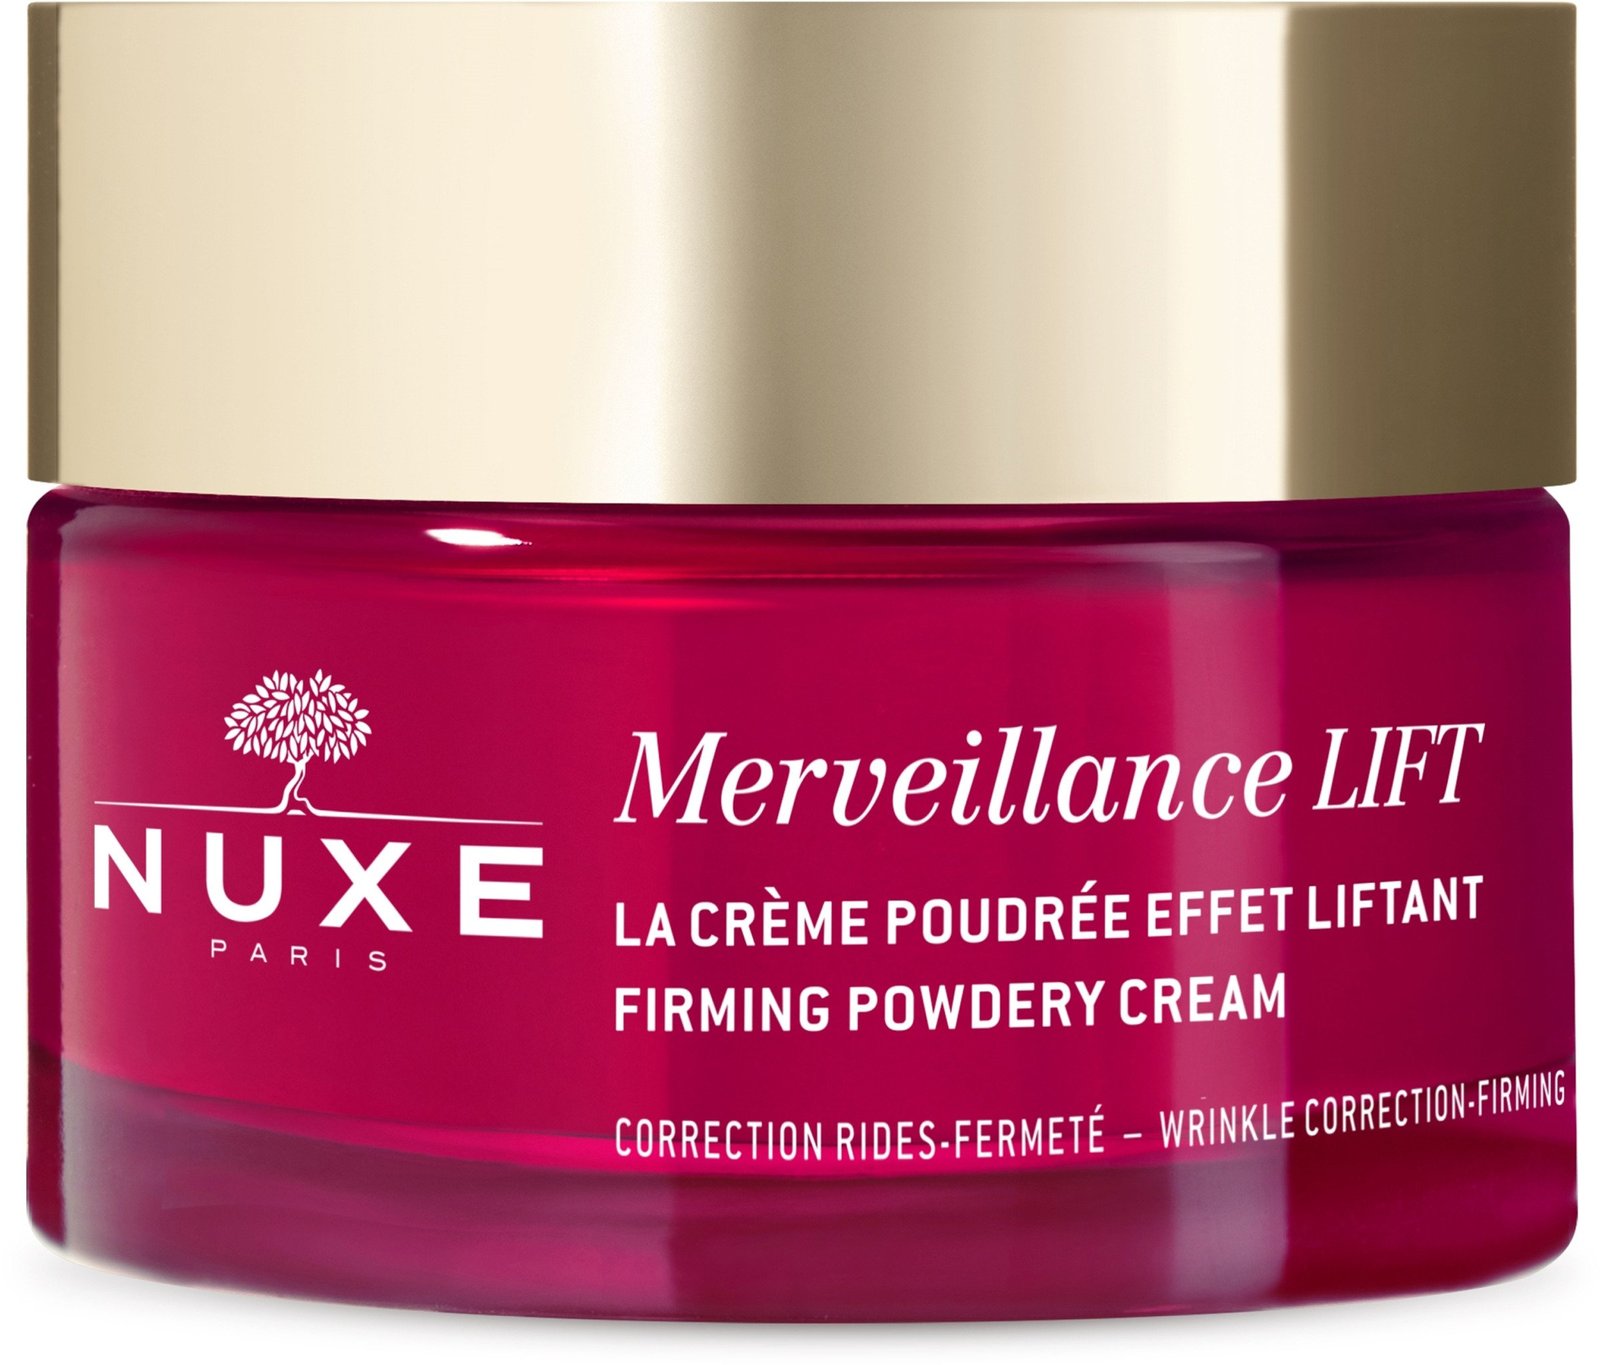 Nuxe Merveillance Lift Firming Powdery Cream 50 ml